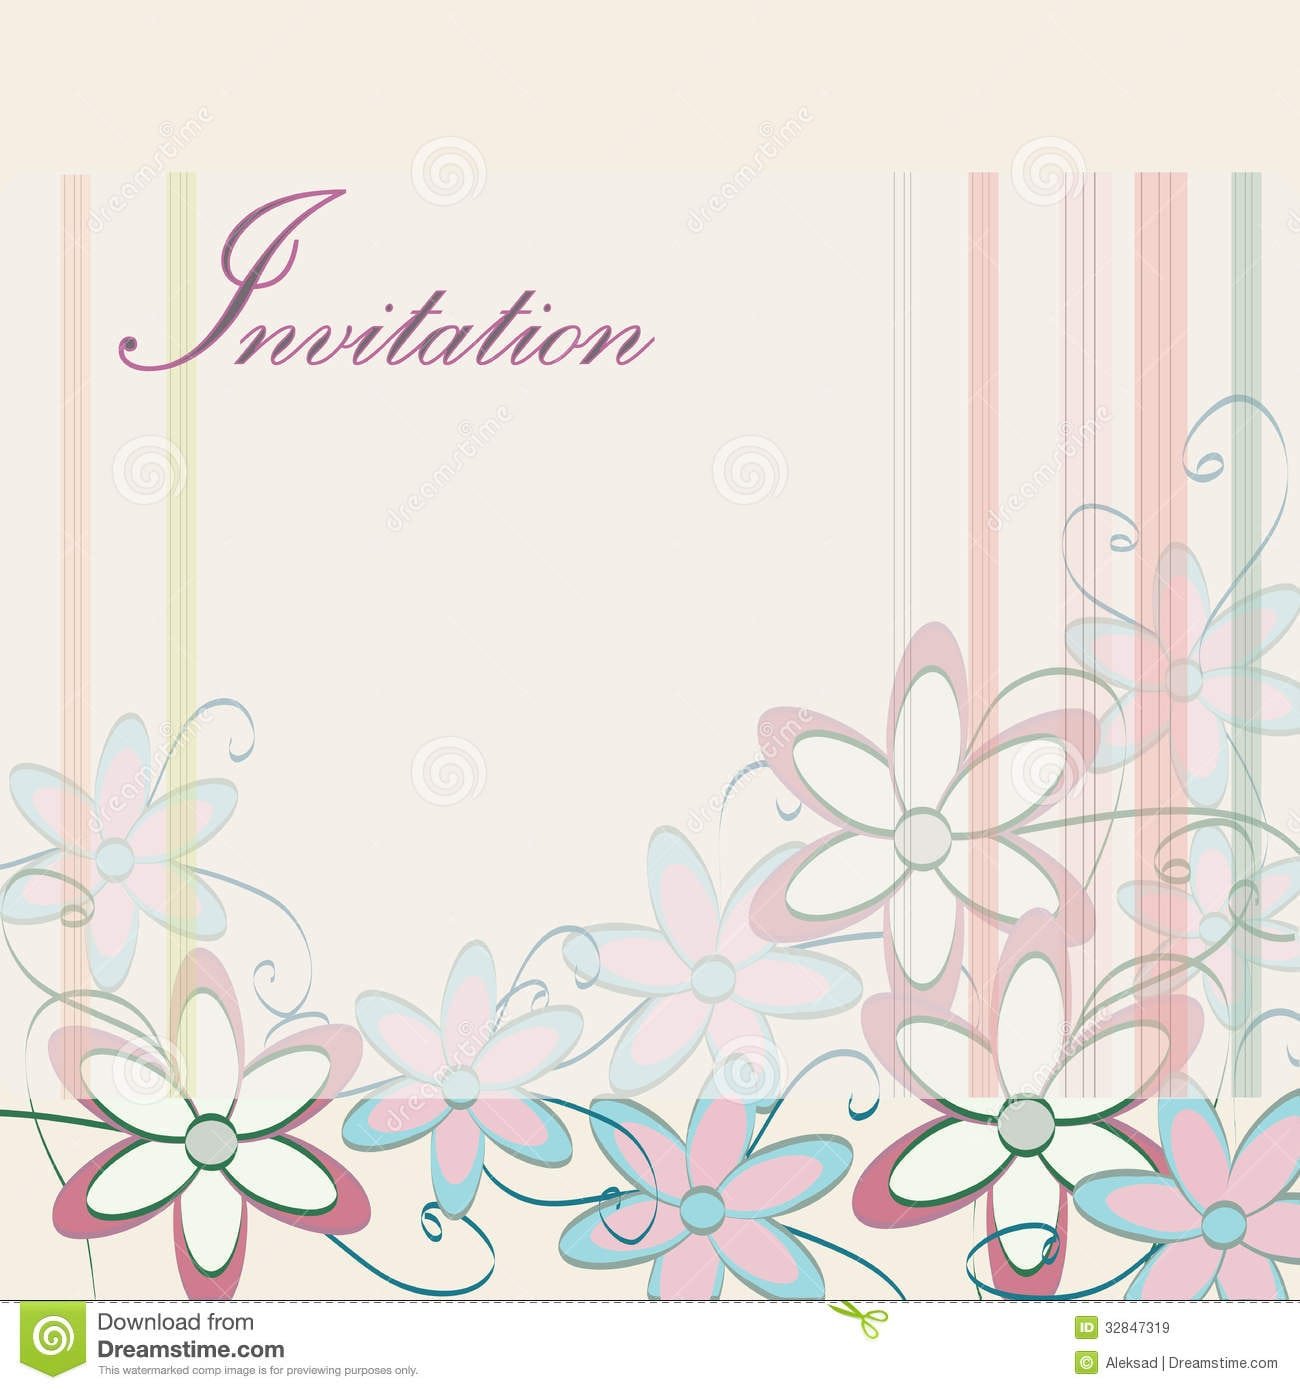 Invitation Card Designs Free Download